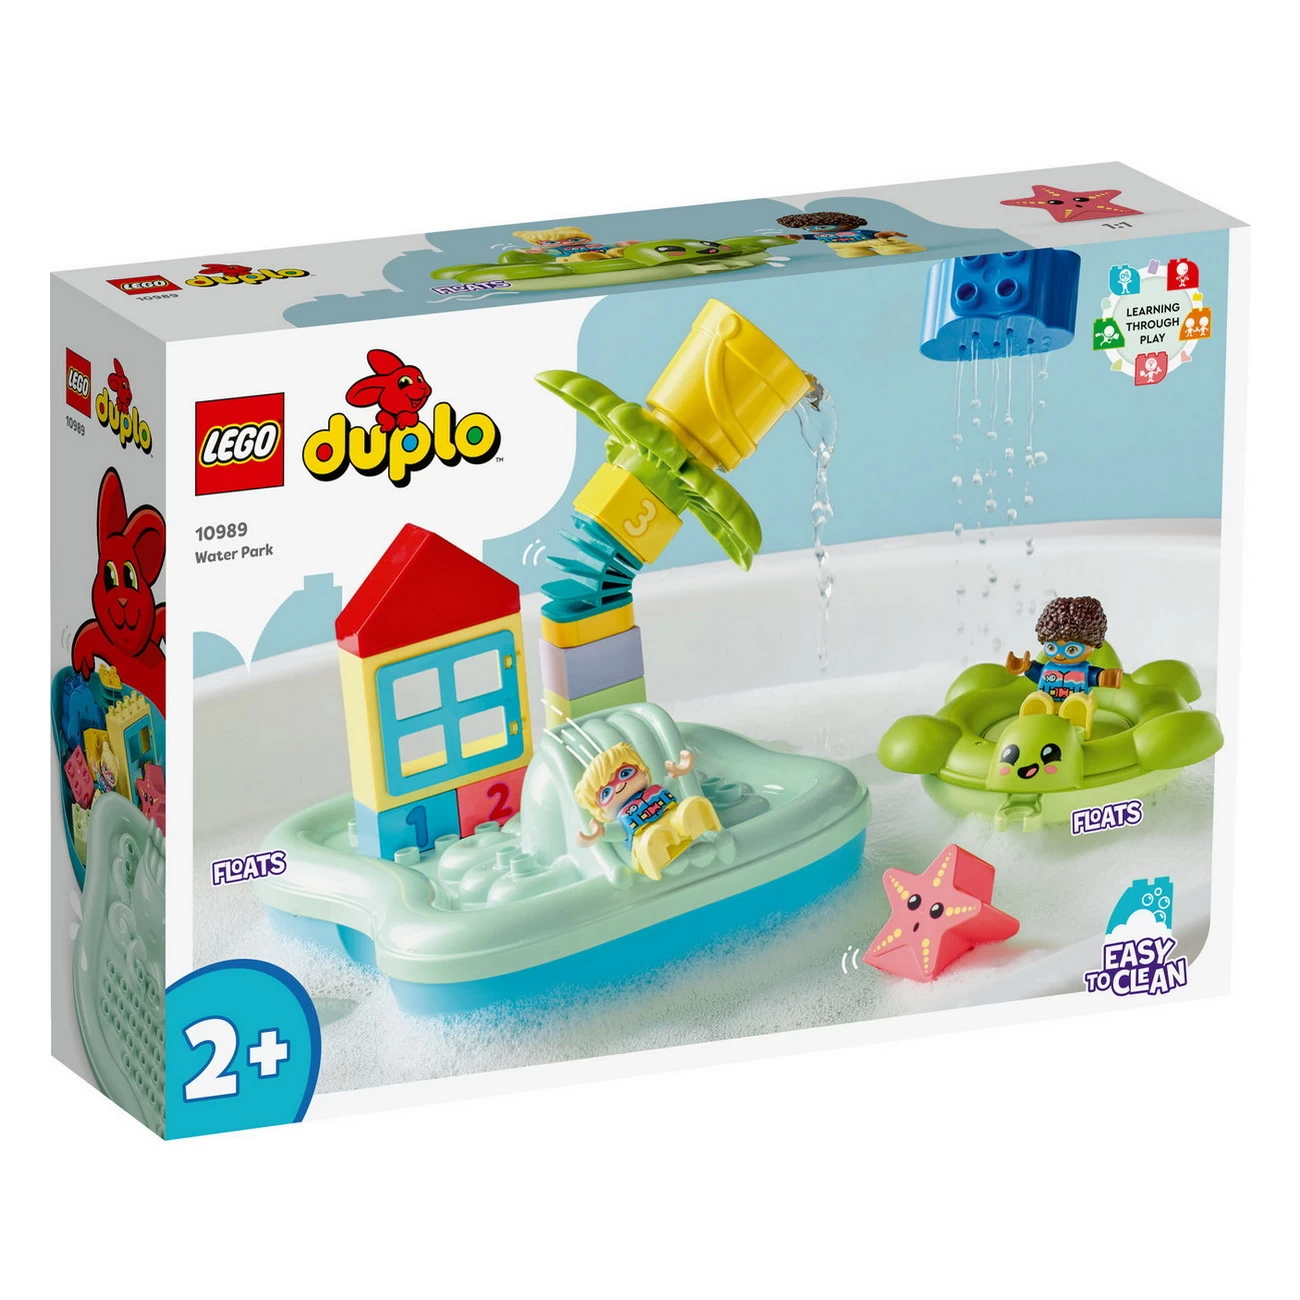 LEGO DUPLO 10989 - Wasserrutsche